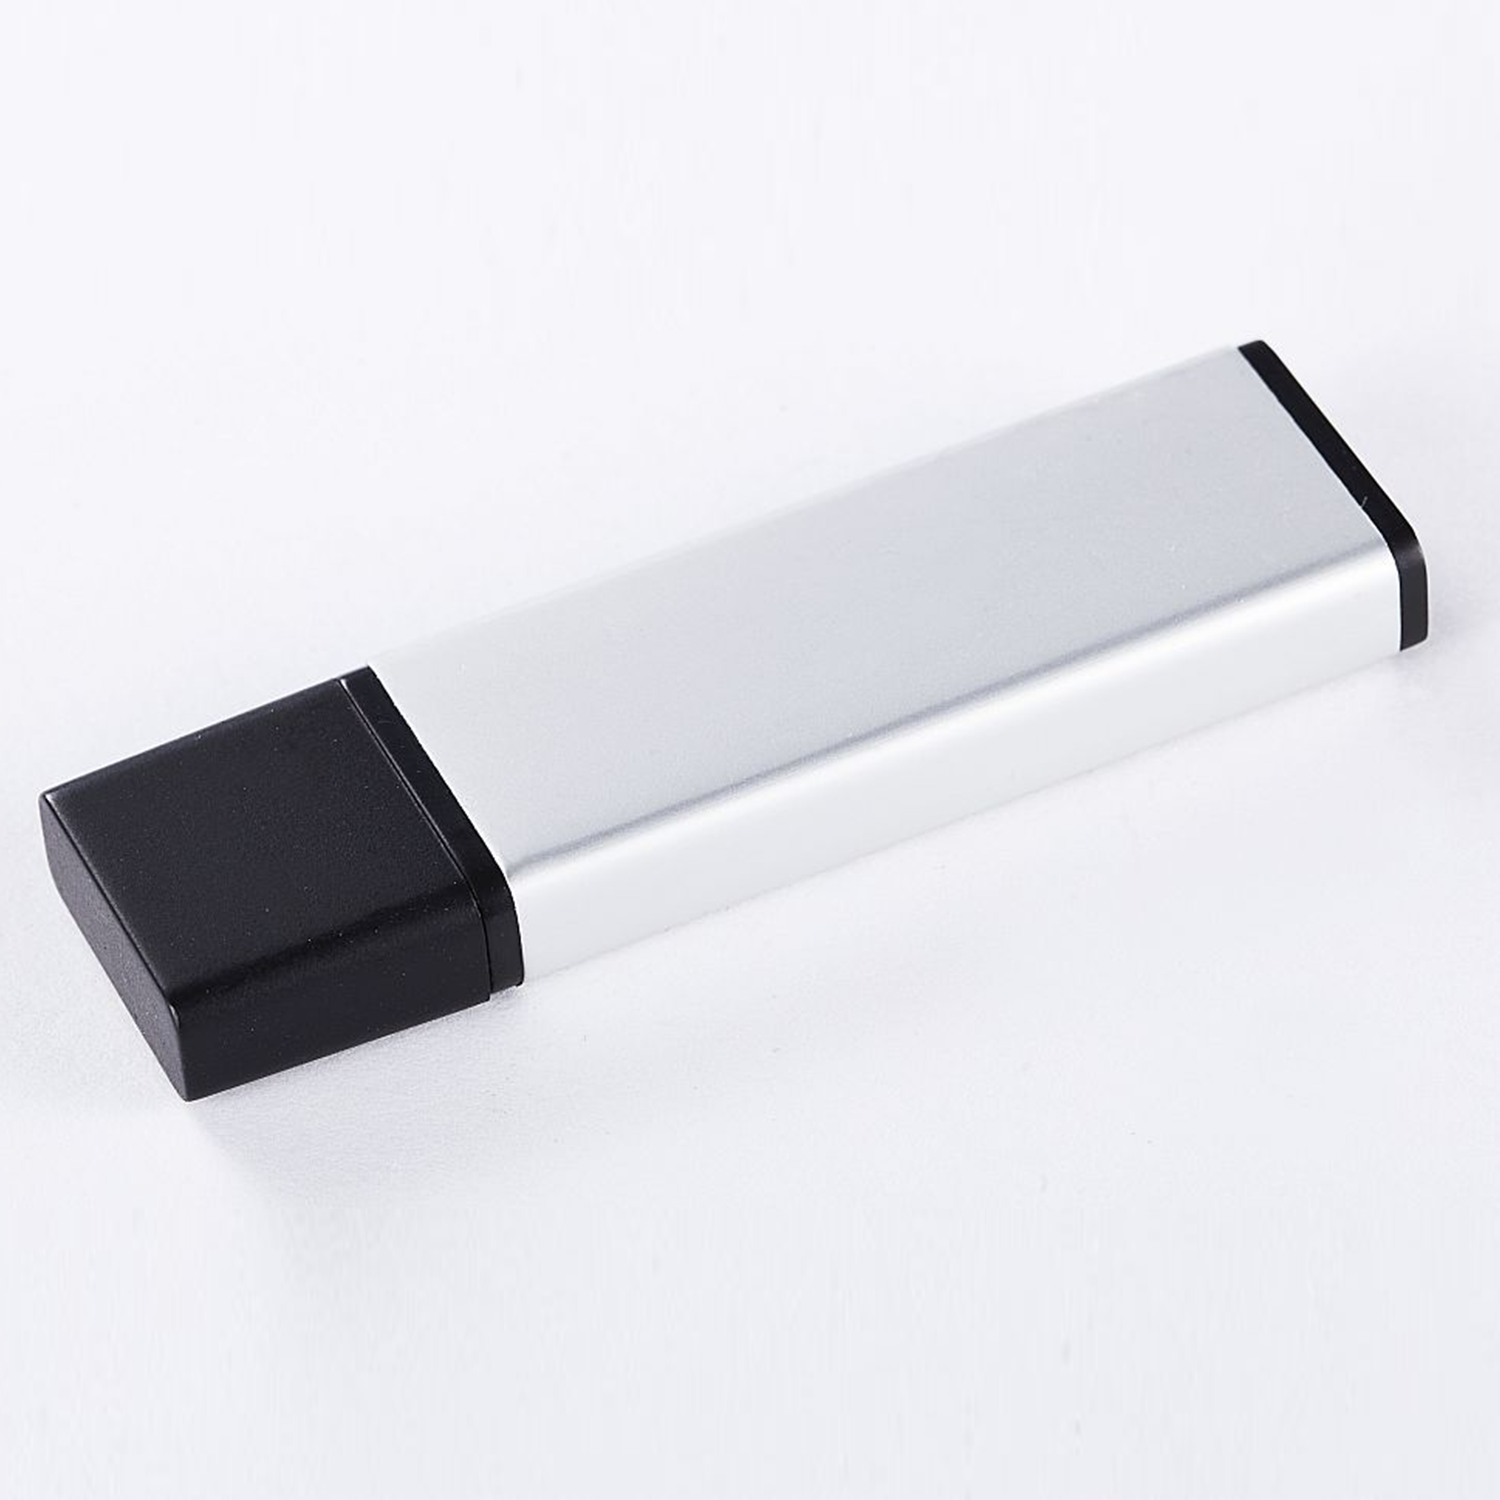 XLYNE USB (ALUMINIUM, - 2 2 GB) USB GB 2.0 Stick